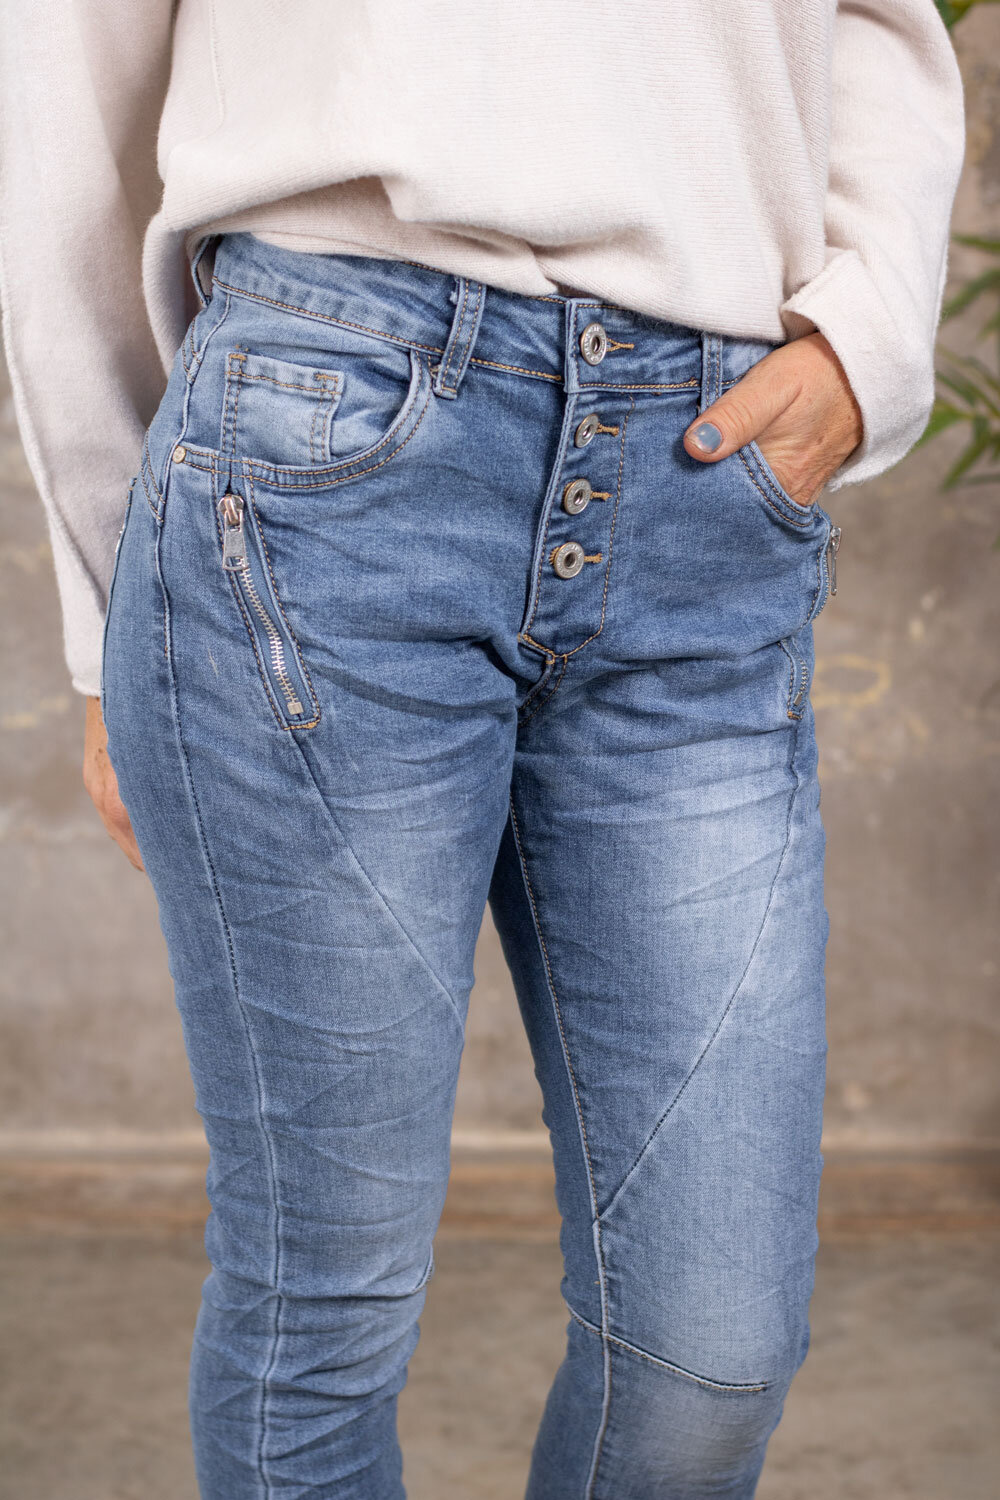 Jeans JW2229 - Dragkedjor - Ljustvätt